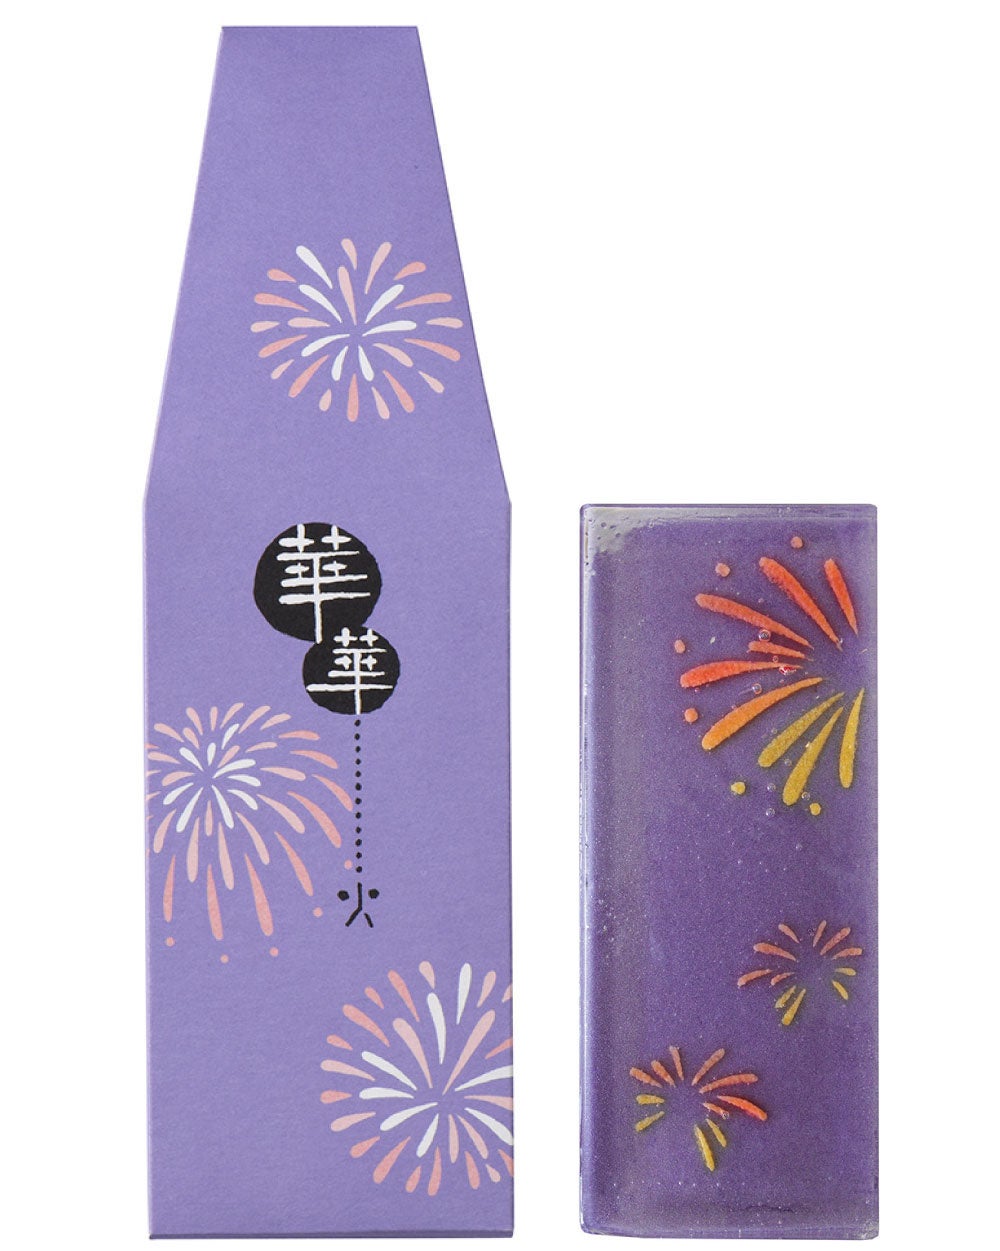 “映える”和菓子。夜空を彩る大輪の花火をうつす「華華火(はなはなび)」今年も期間限定で発売中。